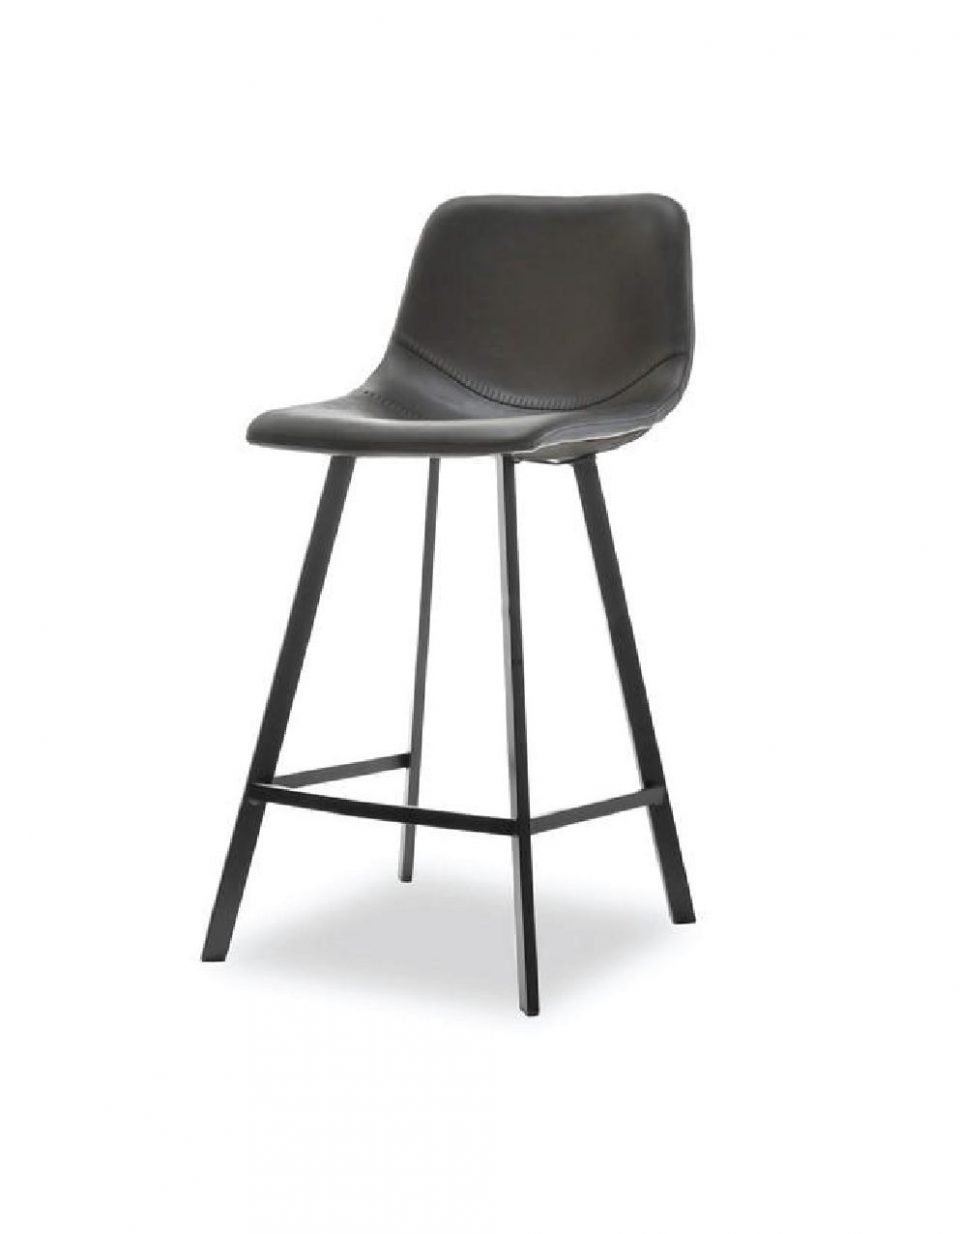 Crna barska stolica izrađena od eko kože u prekrasnom vintage stilu